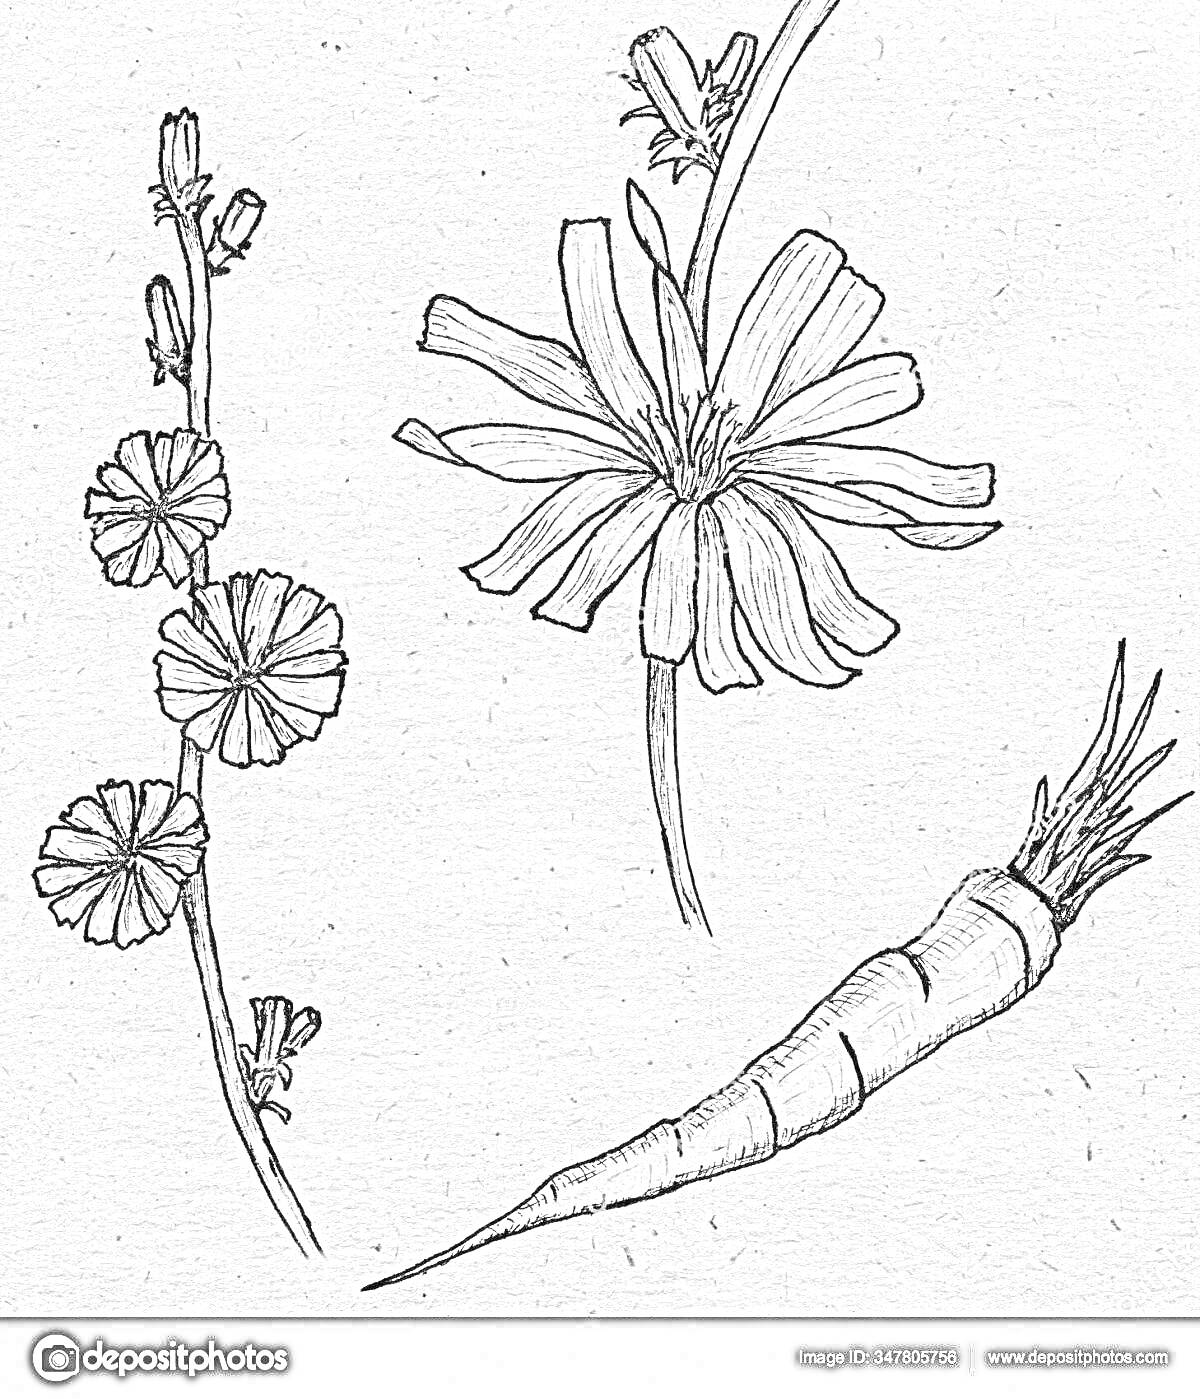 Раскраска Цветы и корень цикория